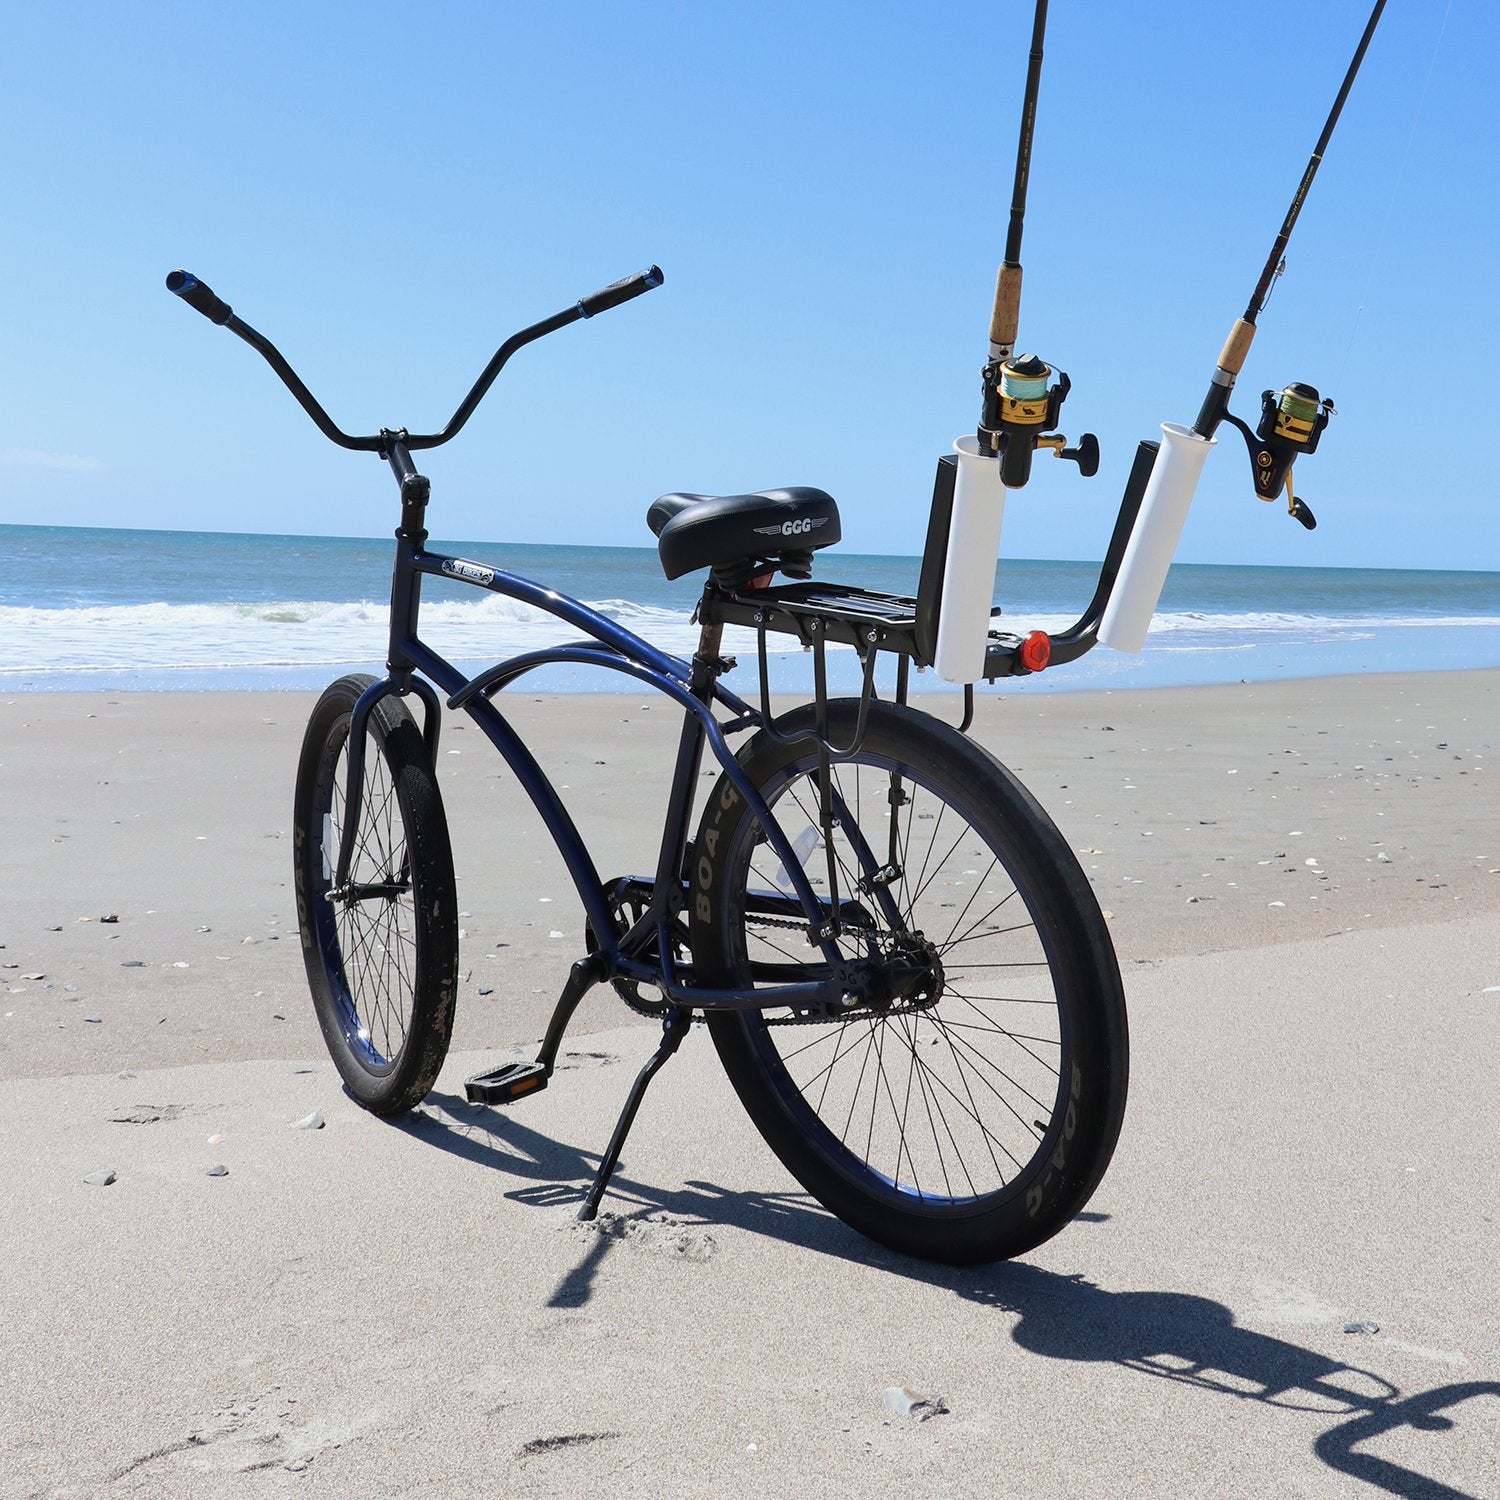 Bike Fishing Rod Holder, 2-Tubes Fishing Rod Holder, Bicycle Fishing Rod